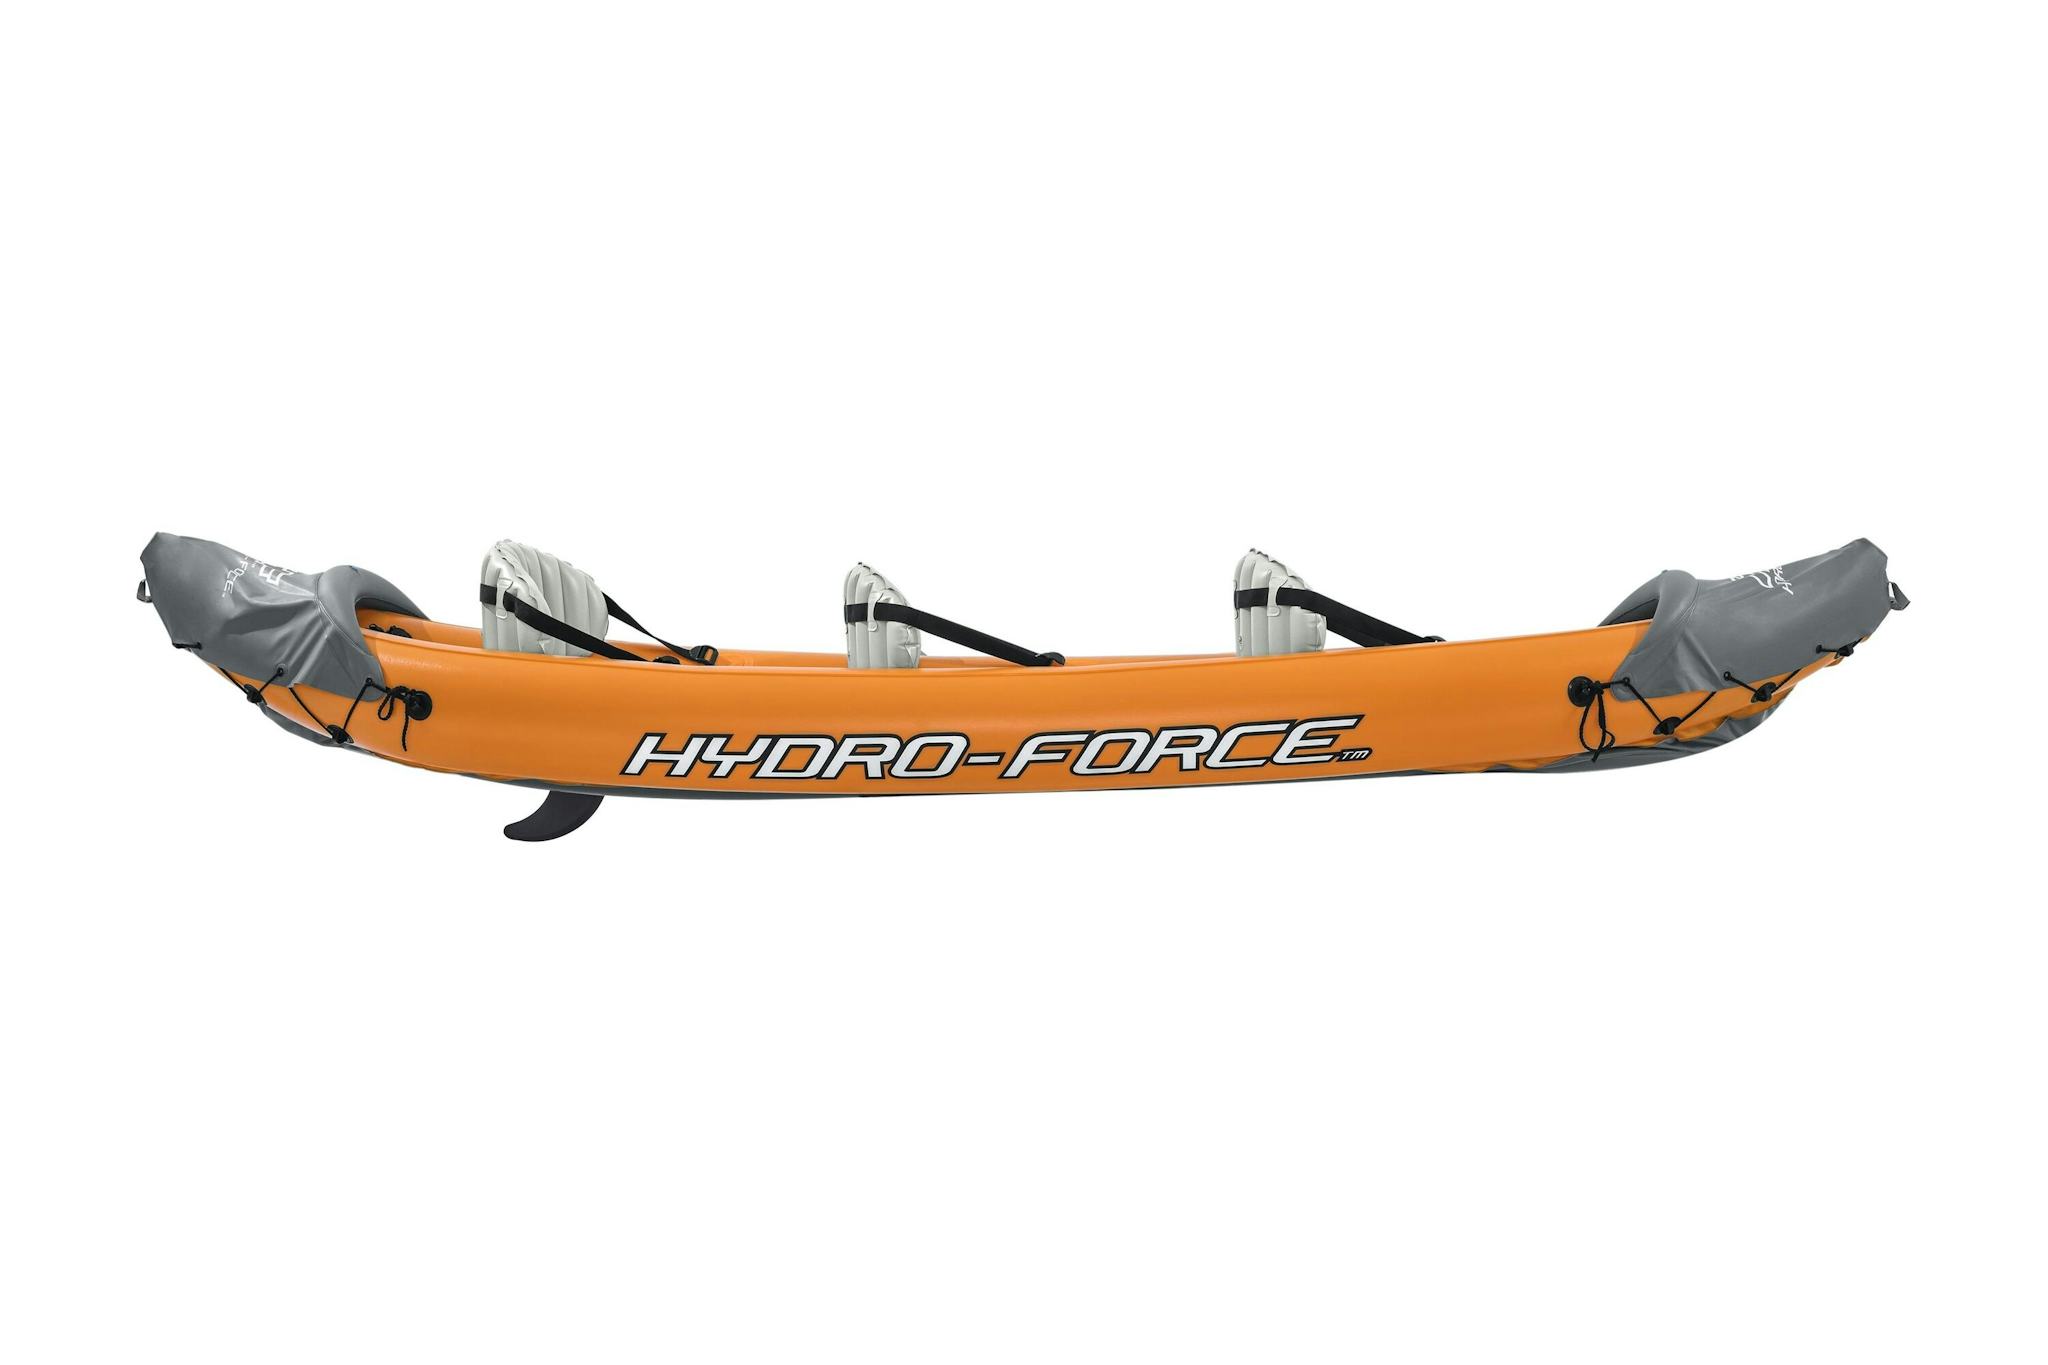 Sports d'eau Kayak gonflable Rapide X3 Hydro-Force™ 381 x 100cm, 3 places, 250 kg max, 2 pagaies, 2 ailerons amovibles et une pompe Bestway 3